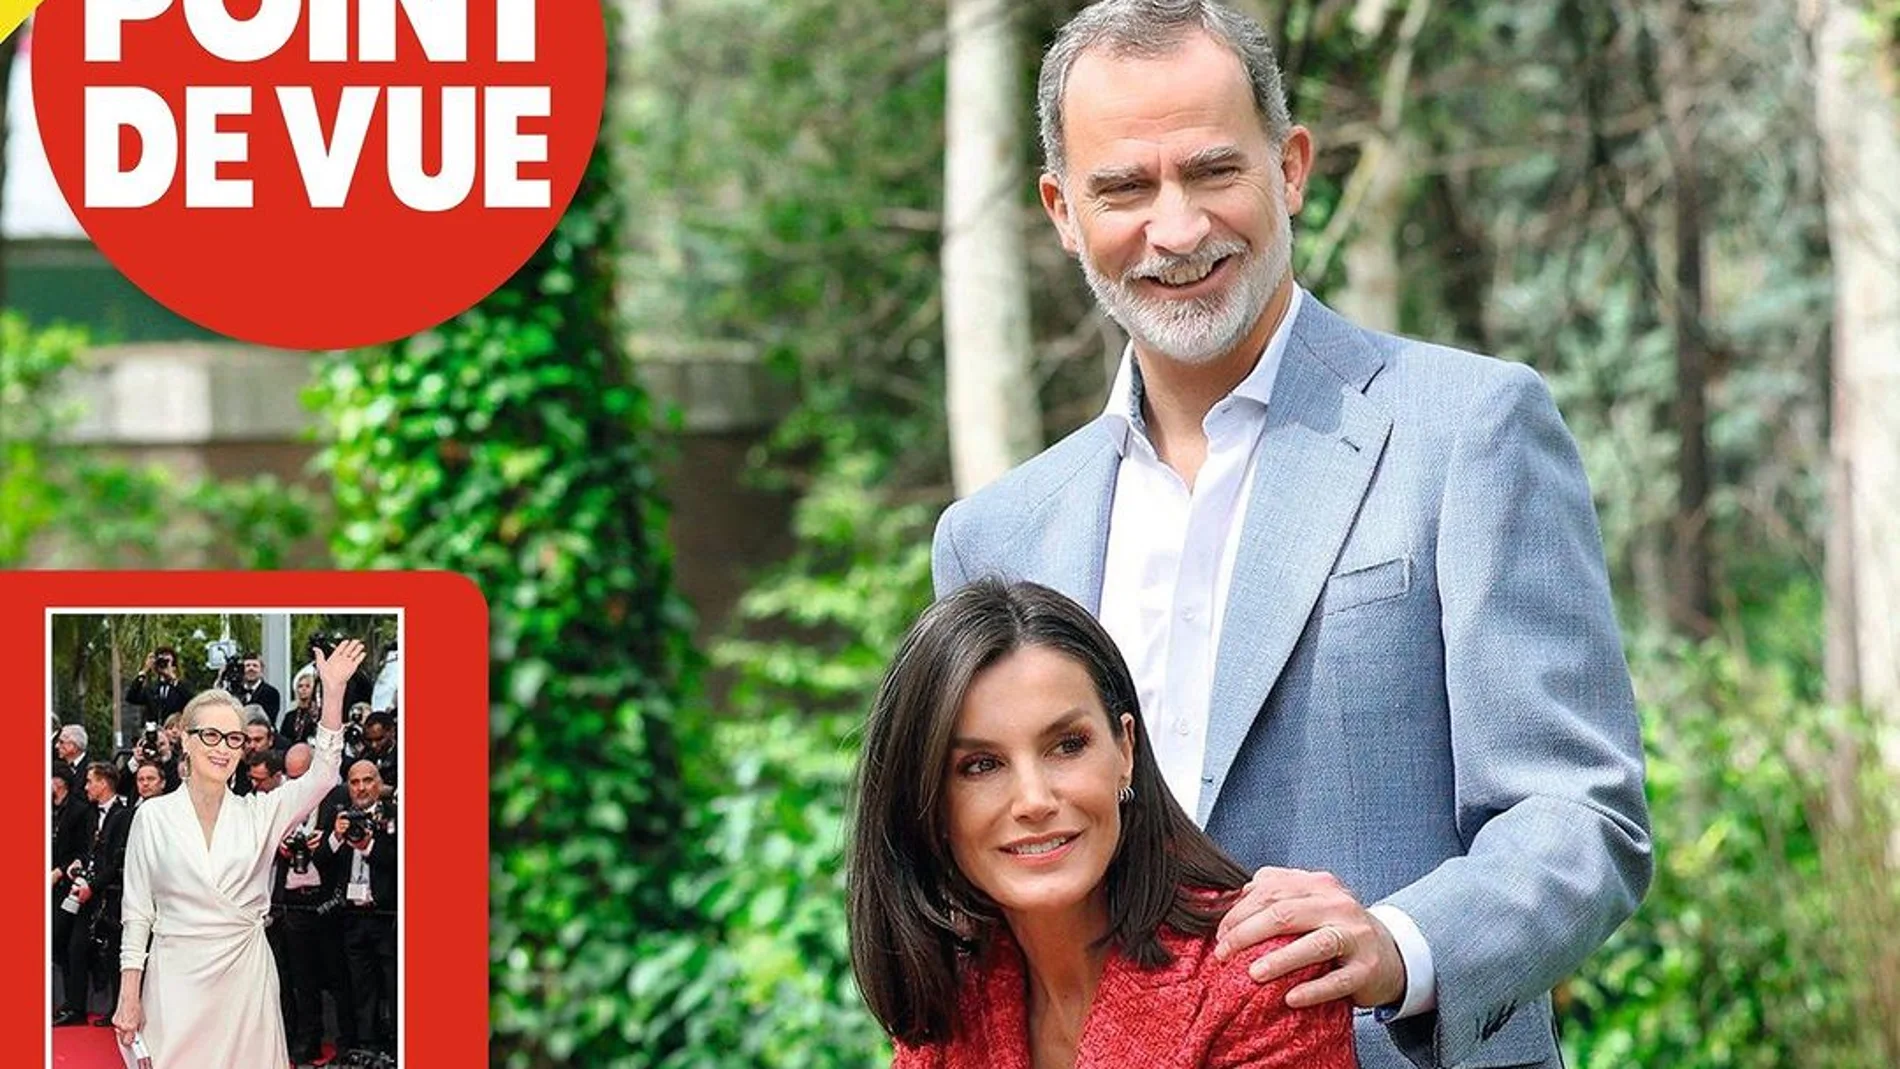 Los Reyes Felipe y Letizia, portada de la revista "Point de Vue"